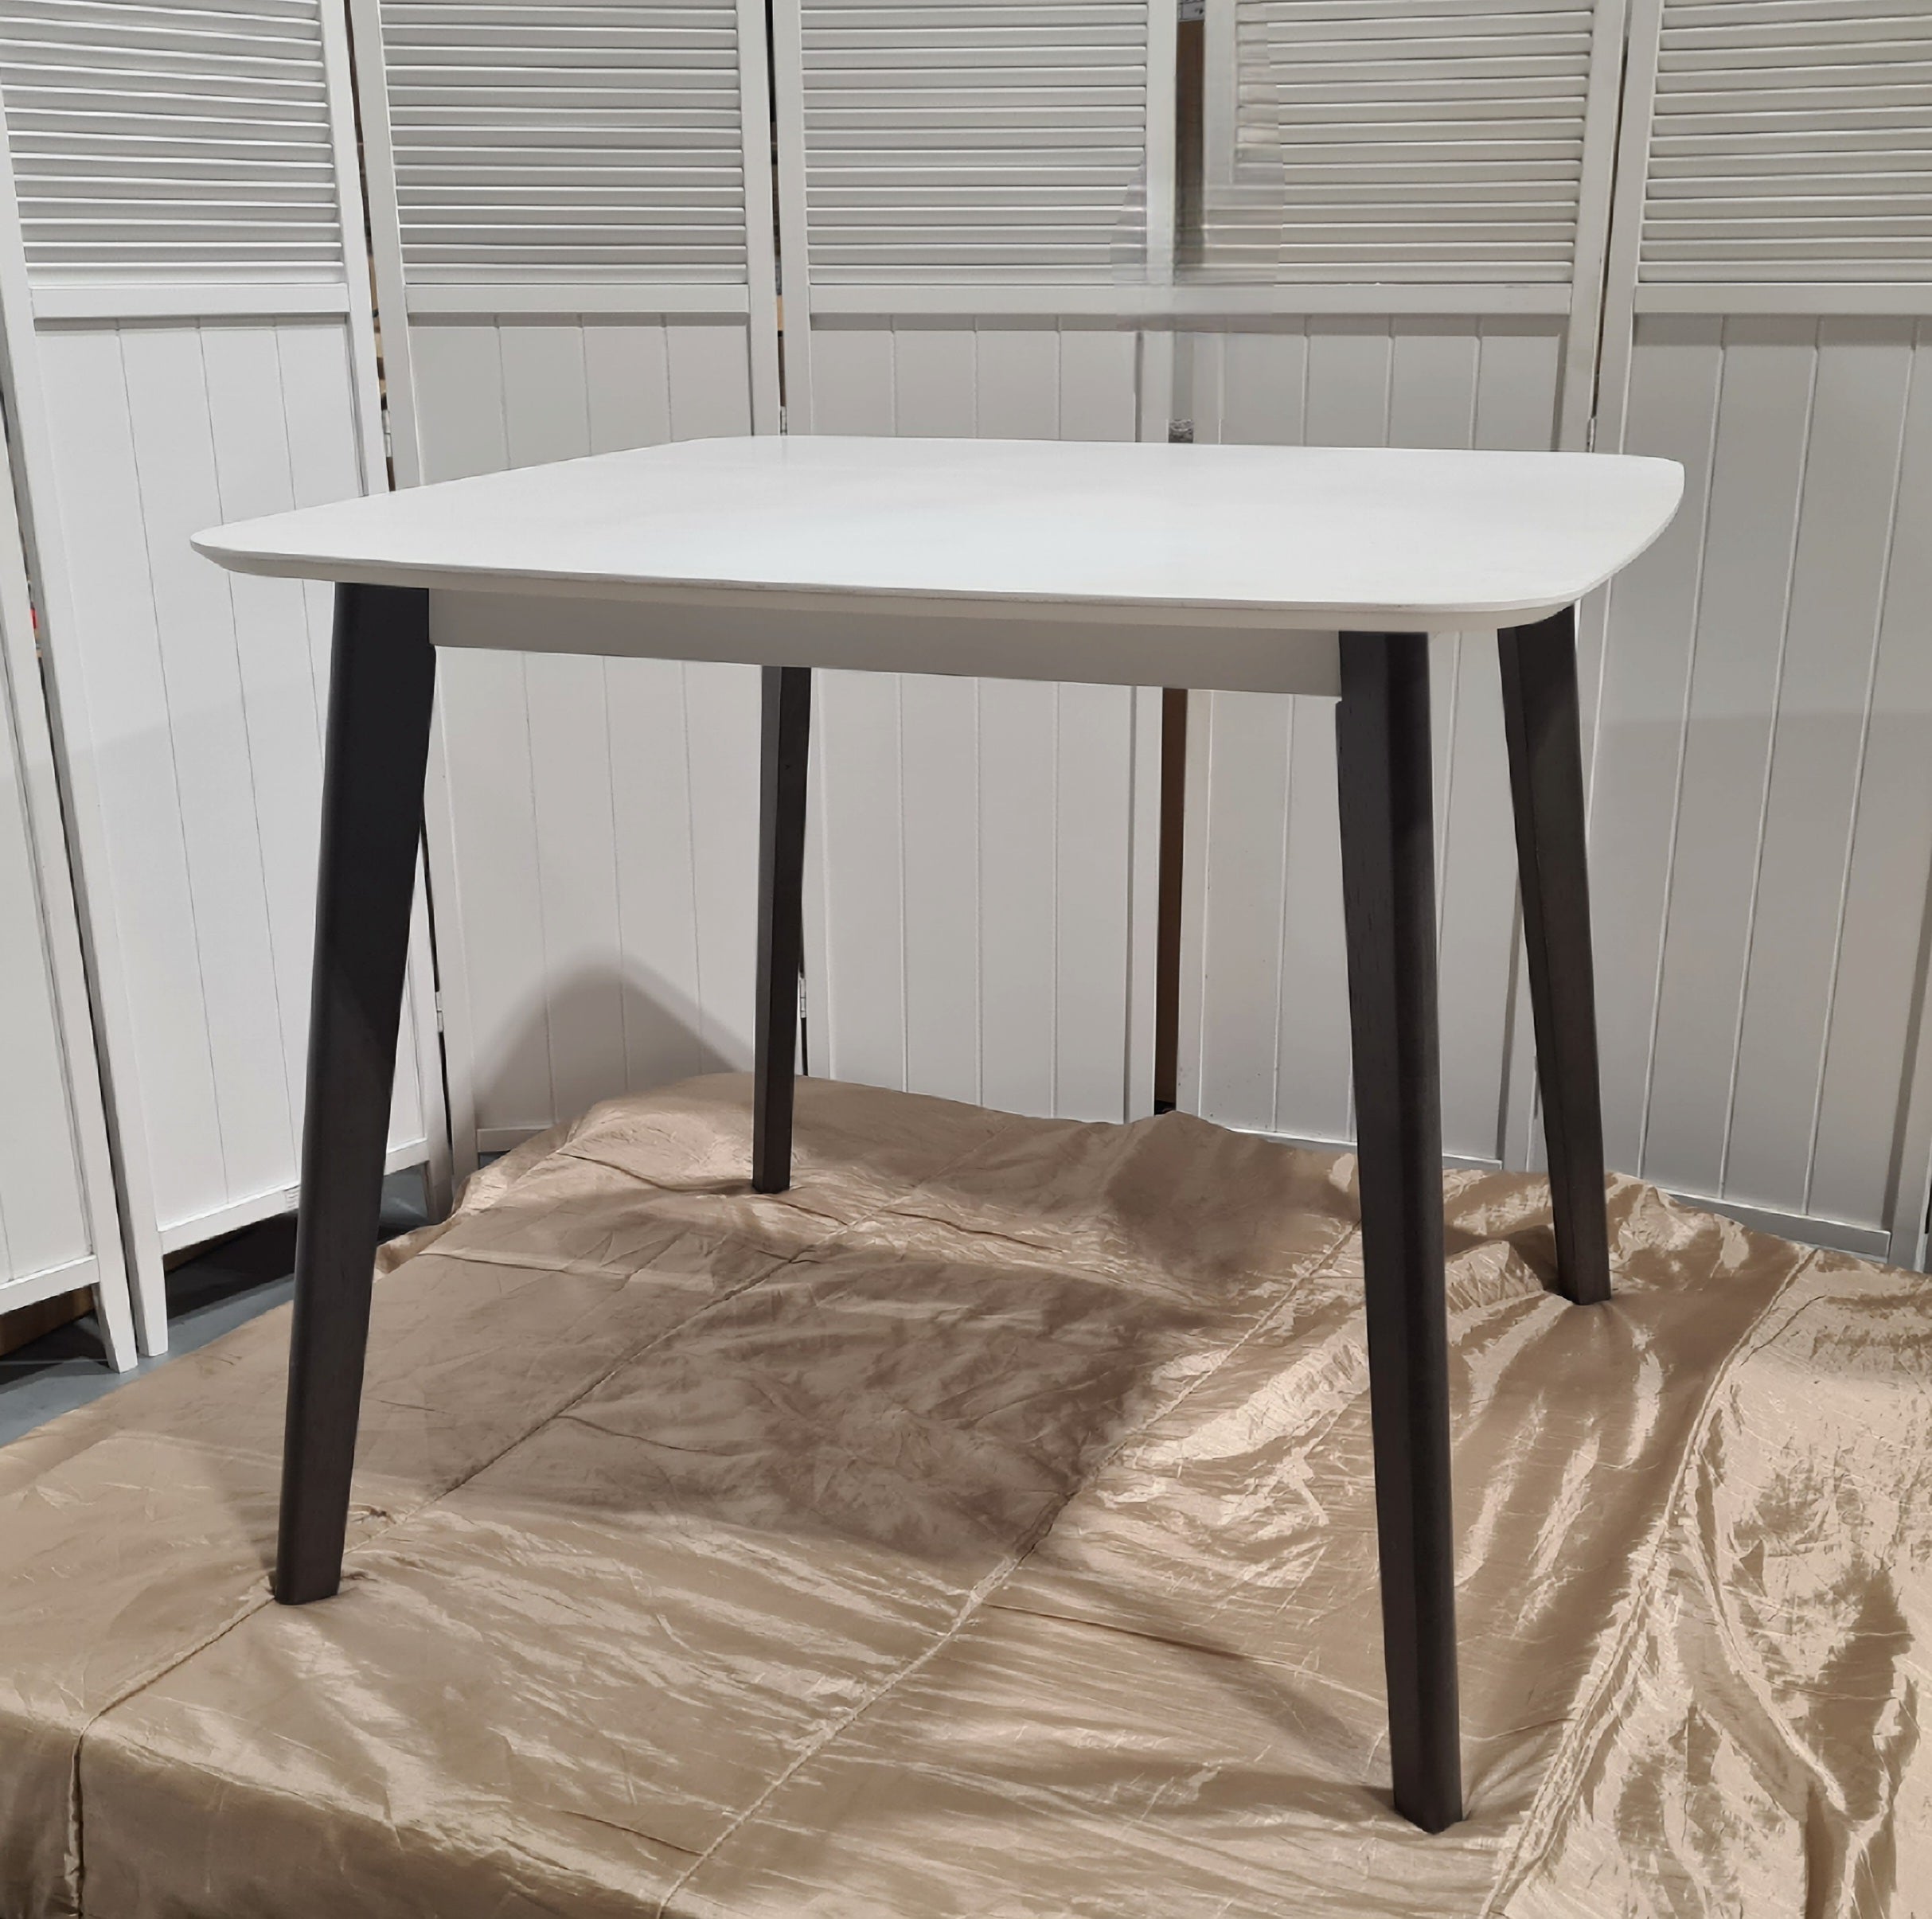 White Top Square Dining Table // Dark legs - $ / week (6 week hire)